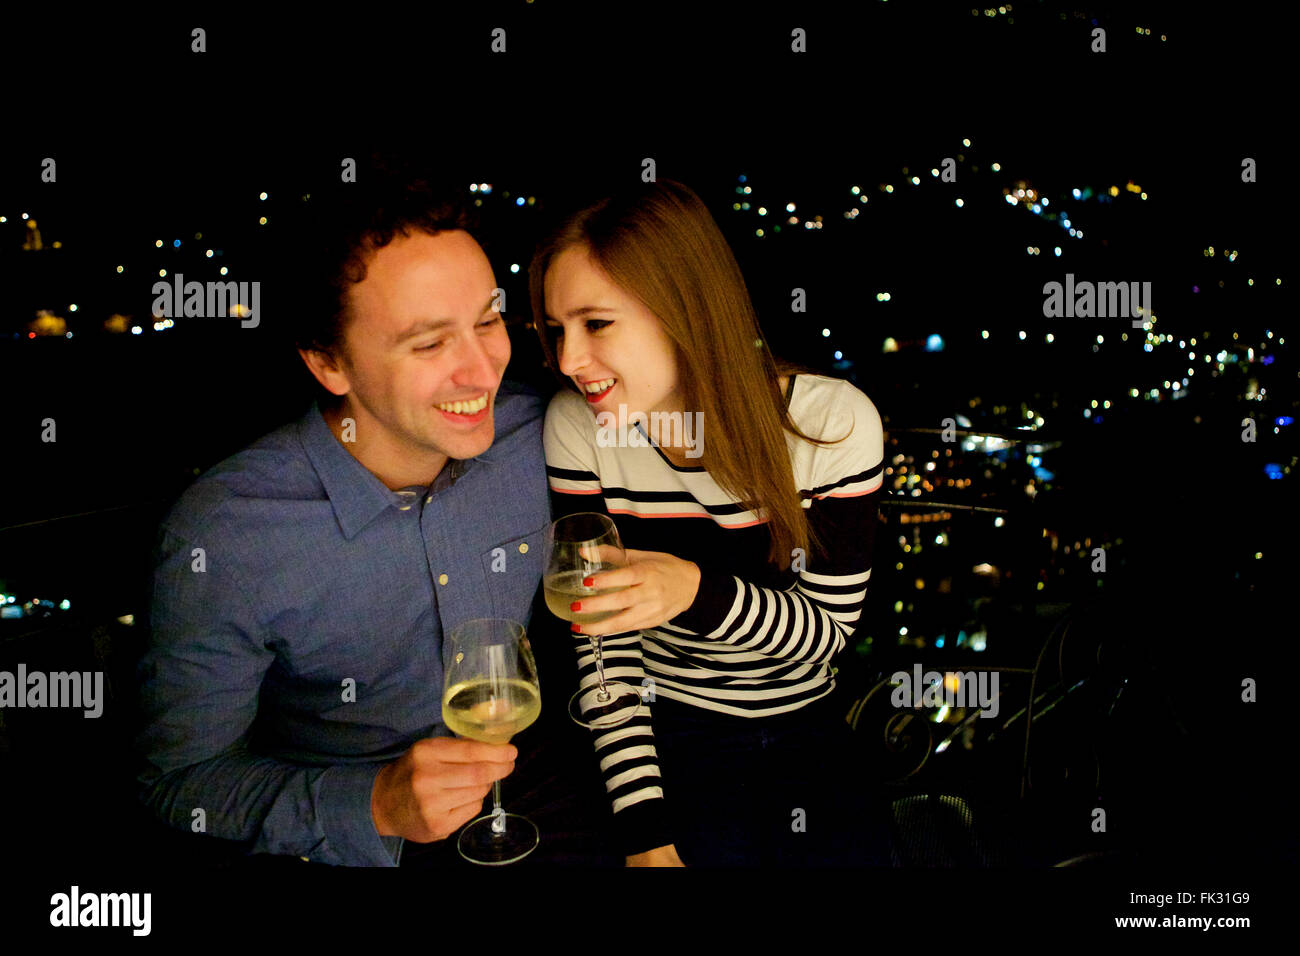 Les jeunes et dans l'amour brunette en vacances en Italie, côte amalfitaine, célébrer avec un verre sur le balcon de nuit Banque D'Images